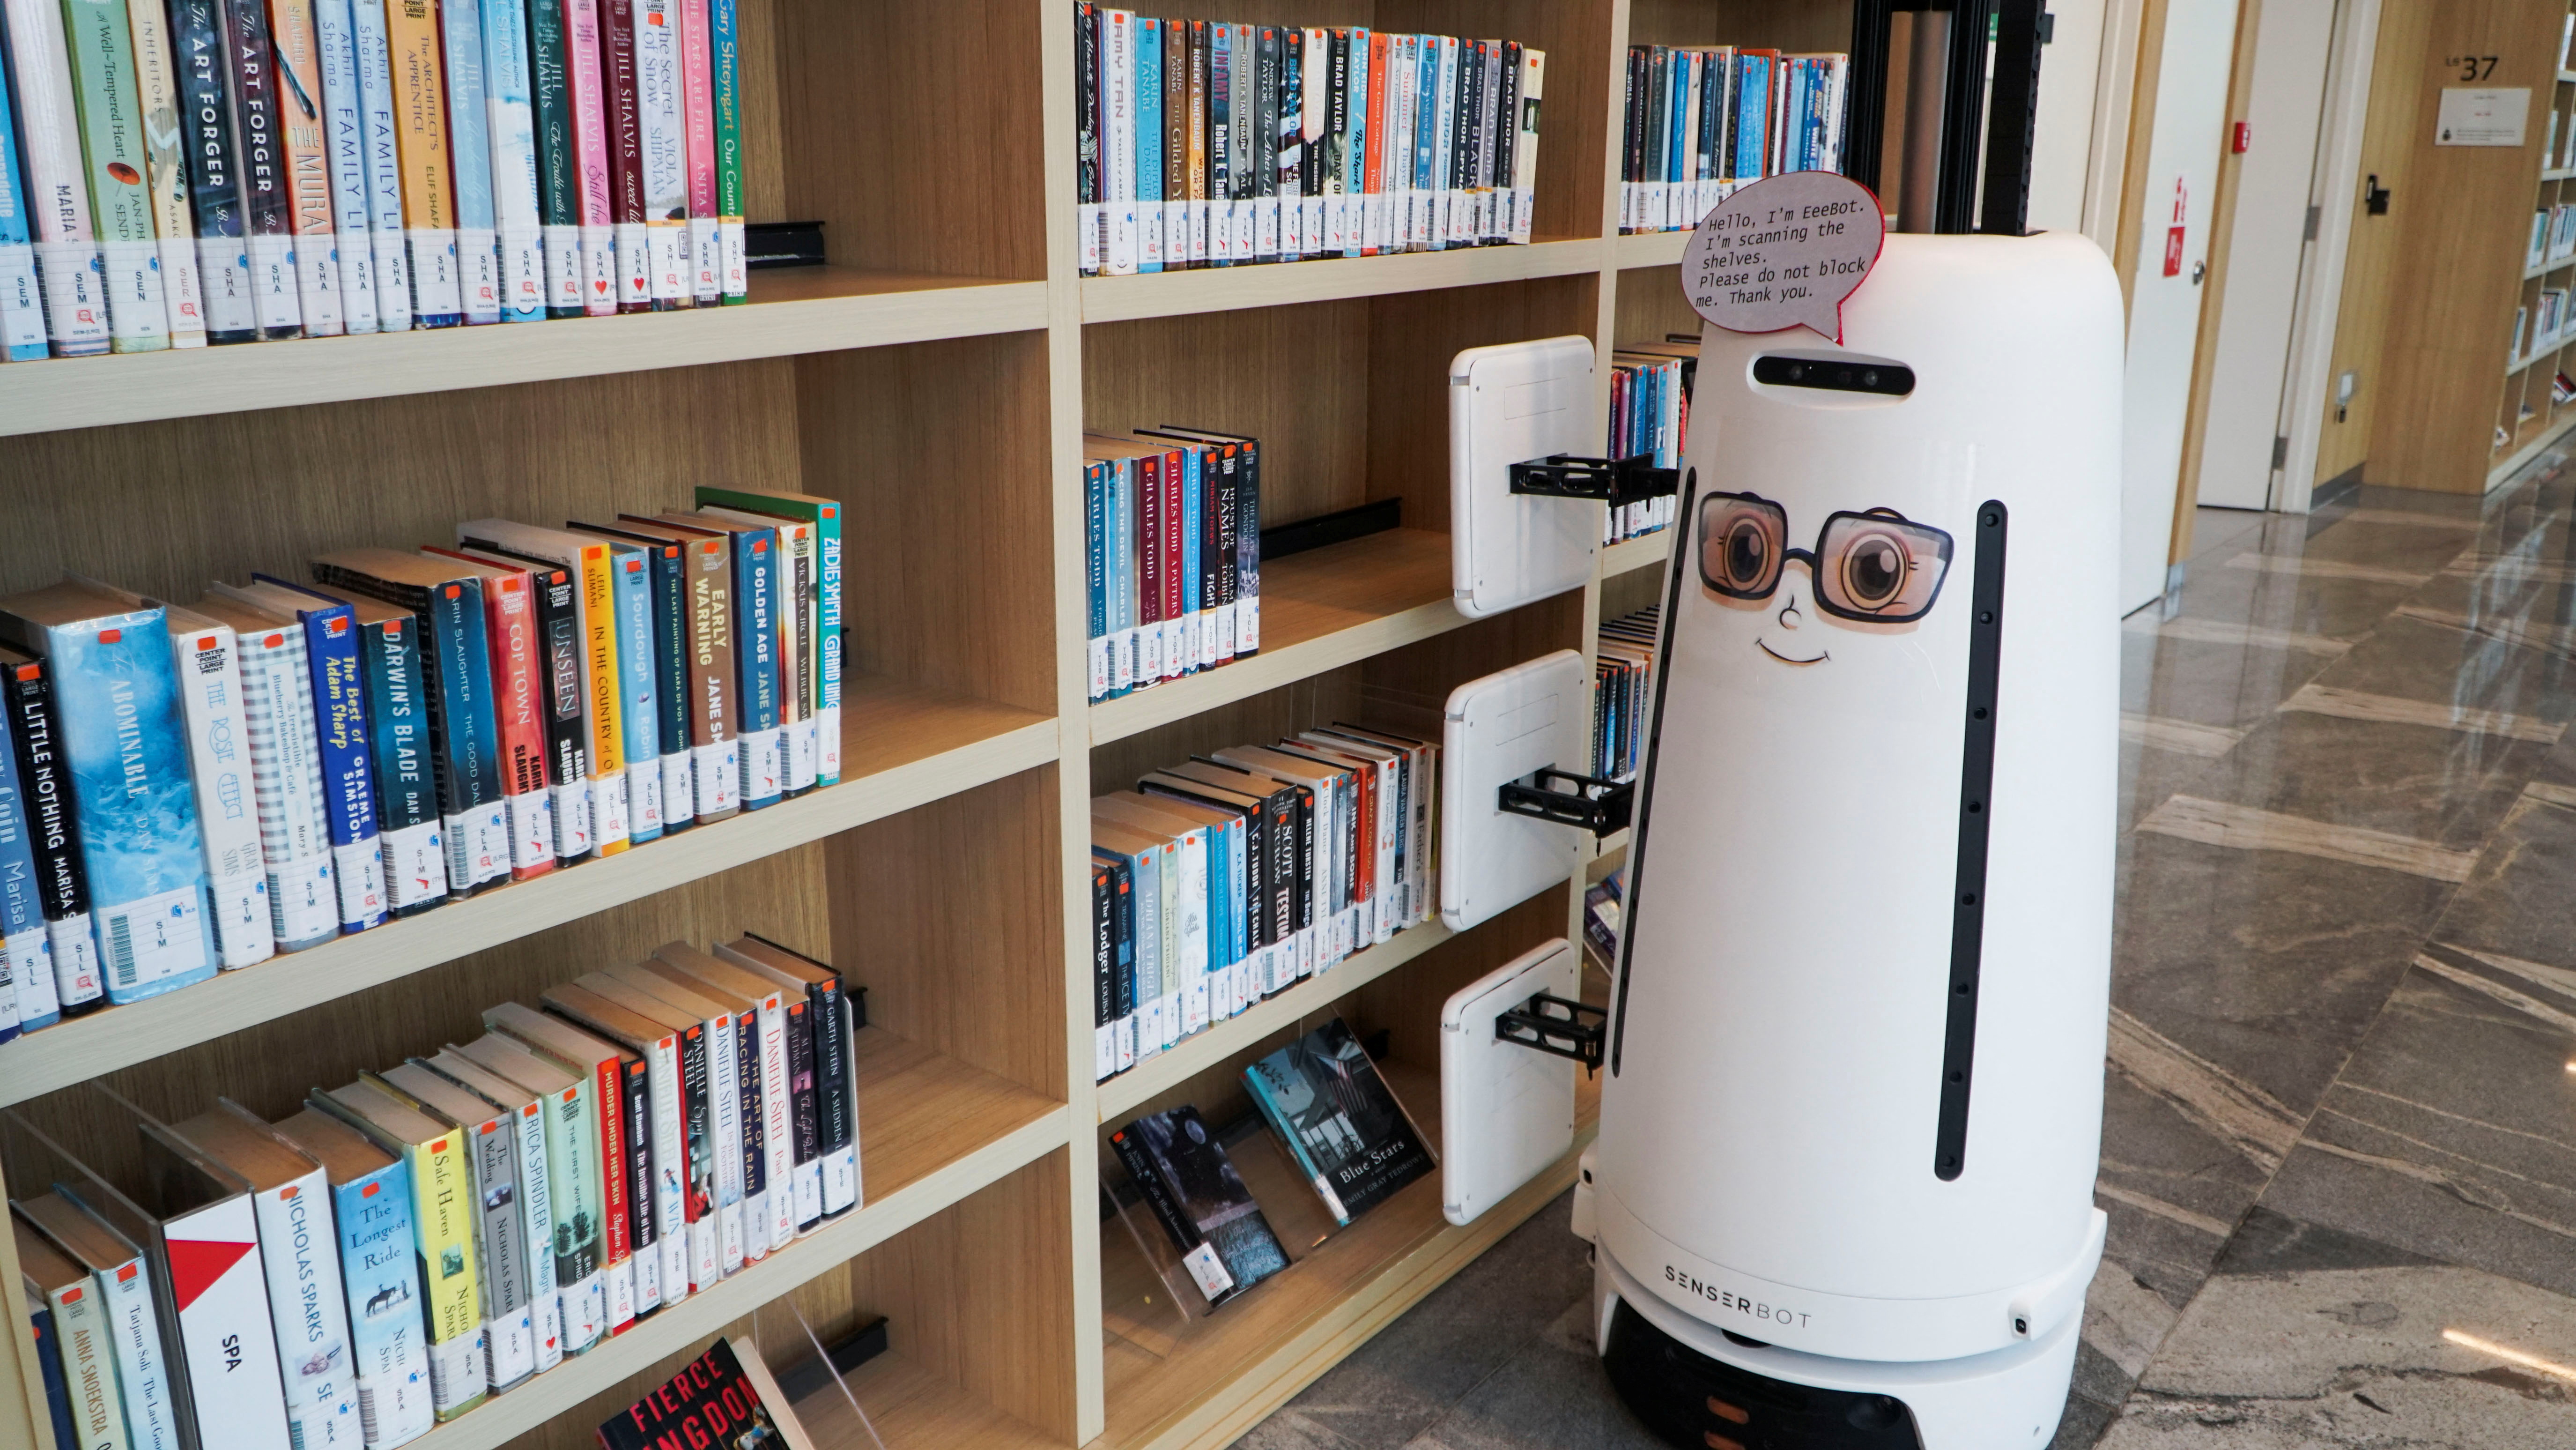 Вид робота для сканирования книг, используемого Национальным советом библиотеки Сингапура для сканирования и сообщения о неуместных книгах в Сингапуре.